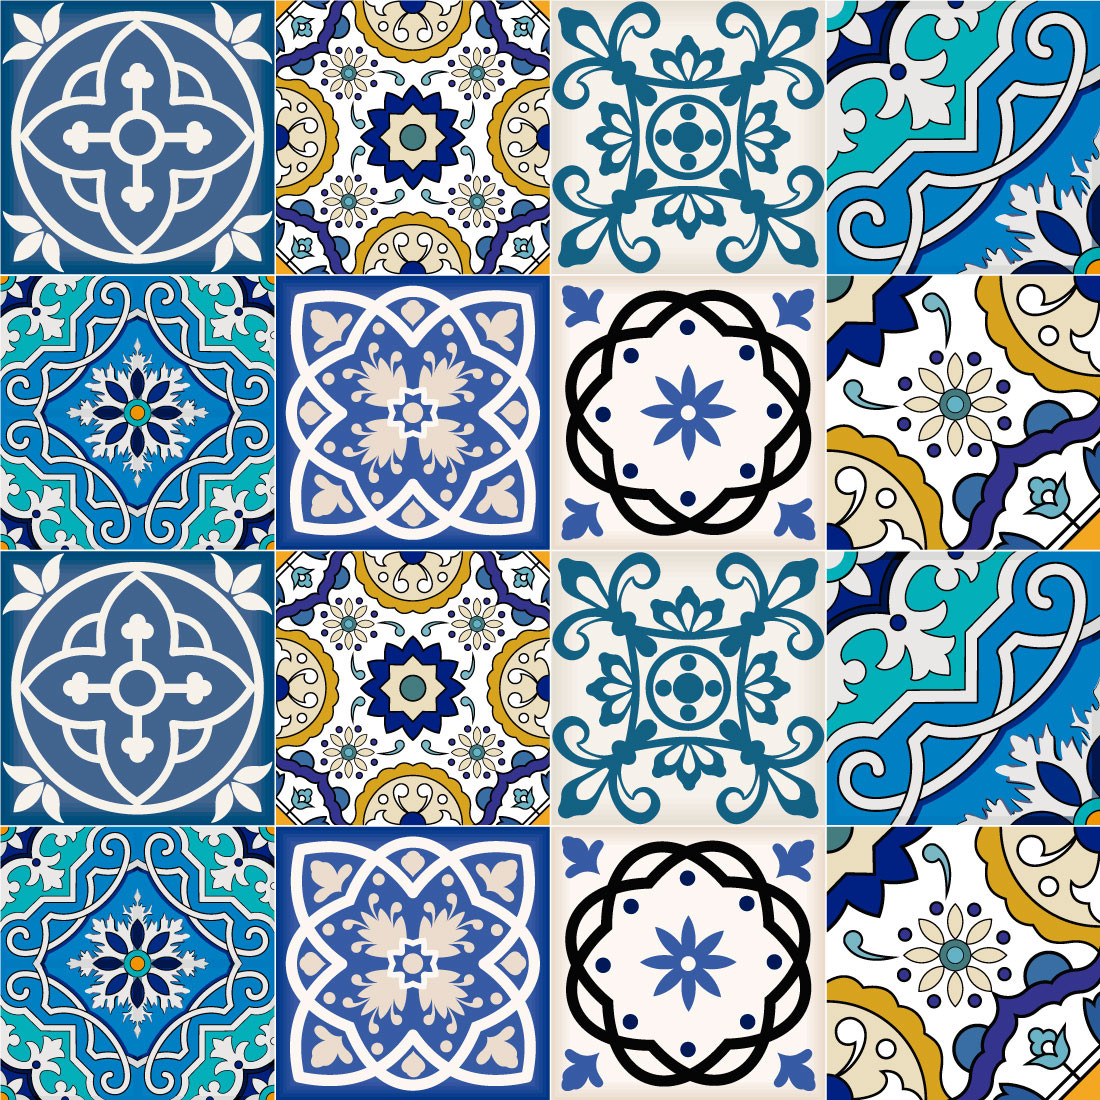 Papel de Parede Mosaico Azulejo Português 